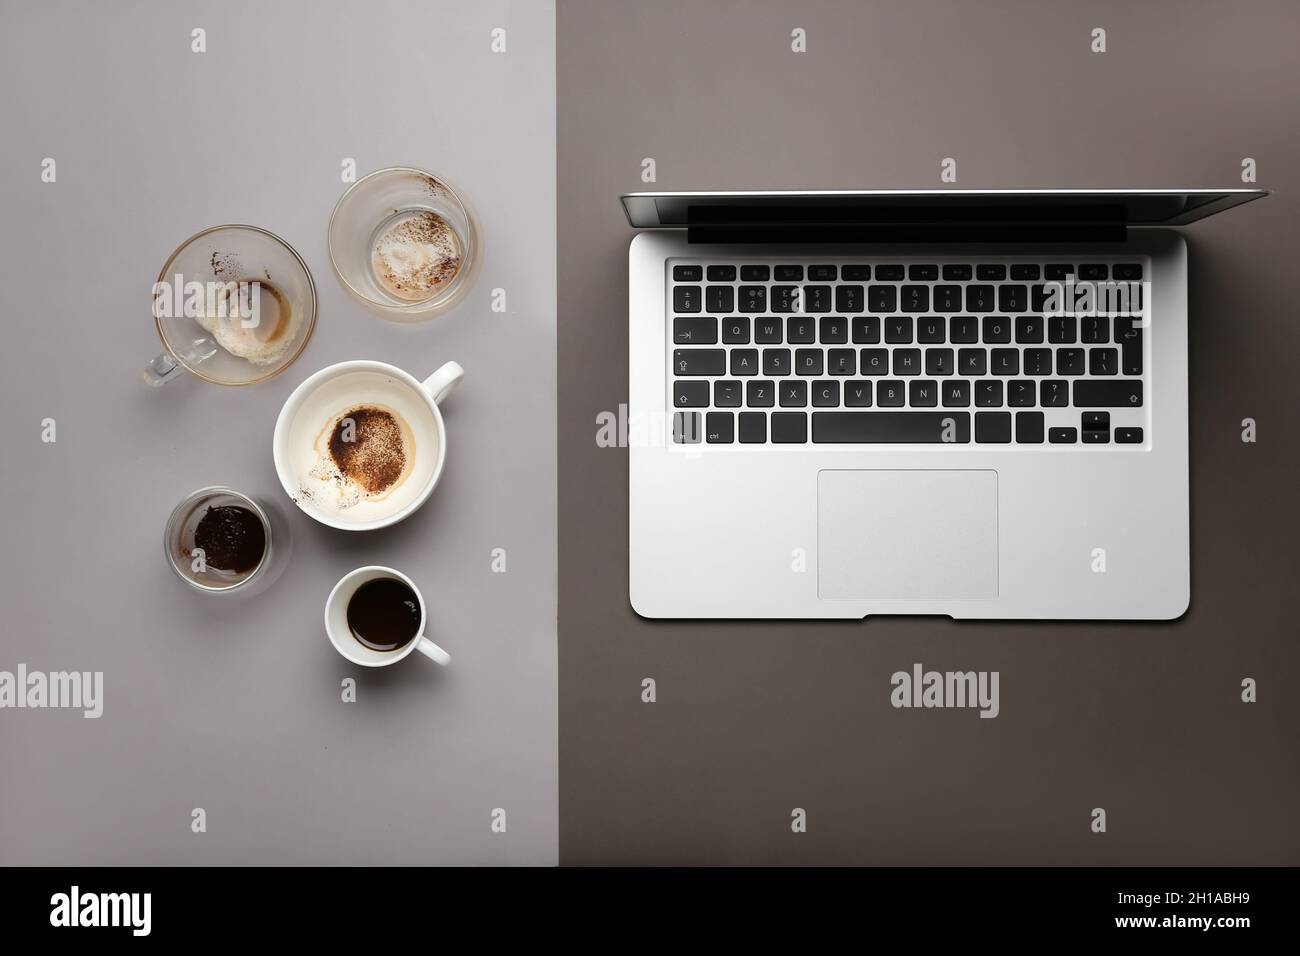 Sự kết hợp hài hòa giữa laptop và tách cà phê đầy quyến rũ sẽ khiến bạn tò mò muốn khám phá hình ảnh của chúng tôi. Chúng tôi đảm bảo những hình ảnh này sẽ khiến bạn tưởng như mình đang thưởng thức cà phê trong không gian làm việc thật thoải mái.